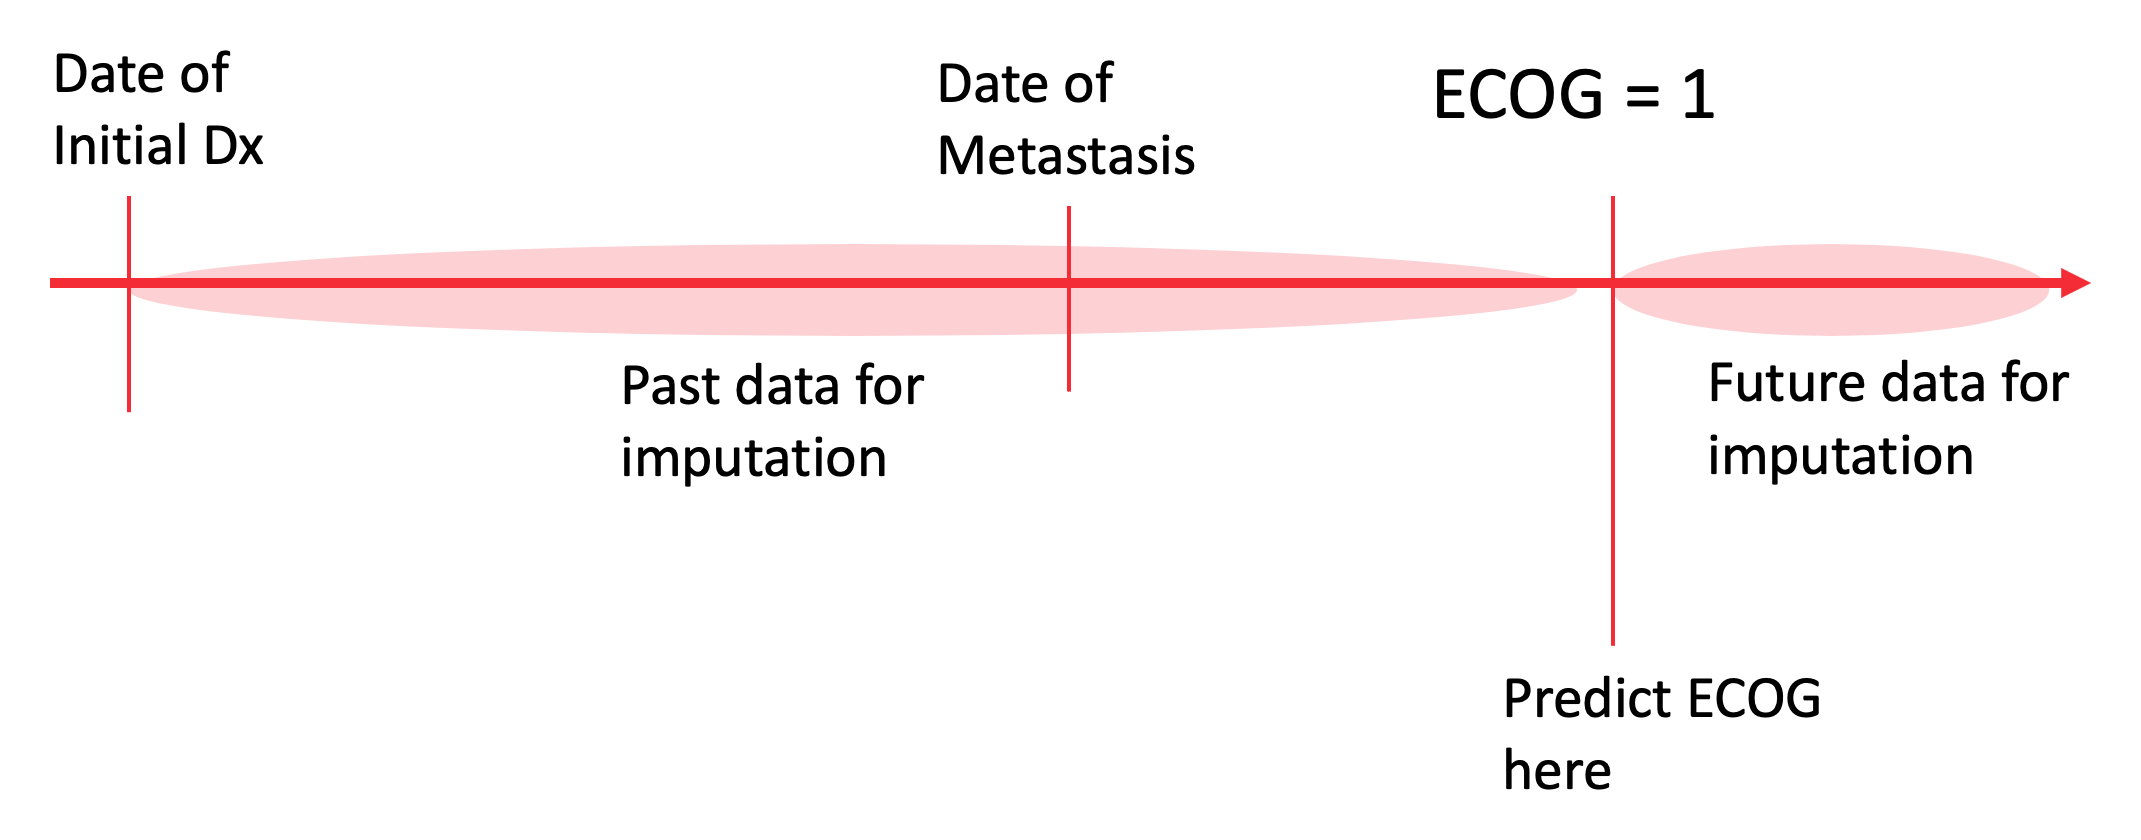 ECOG Imputation Modeling